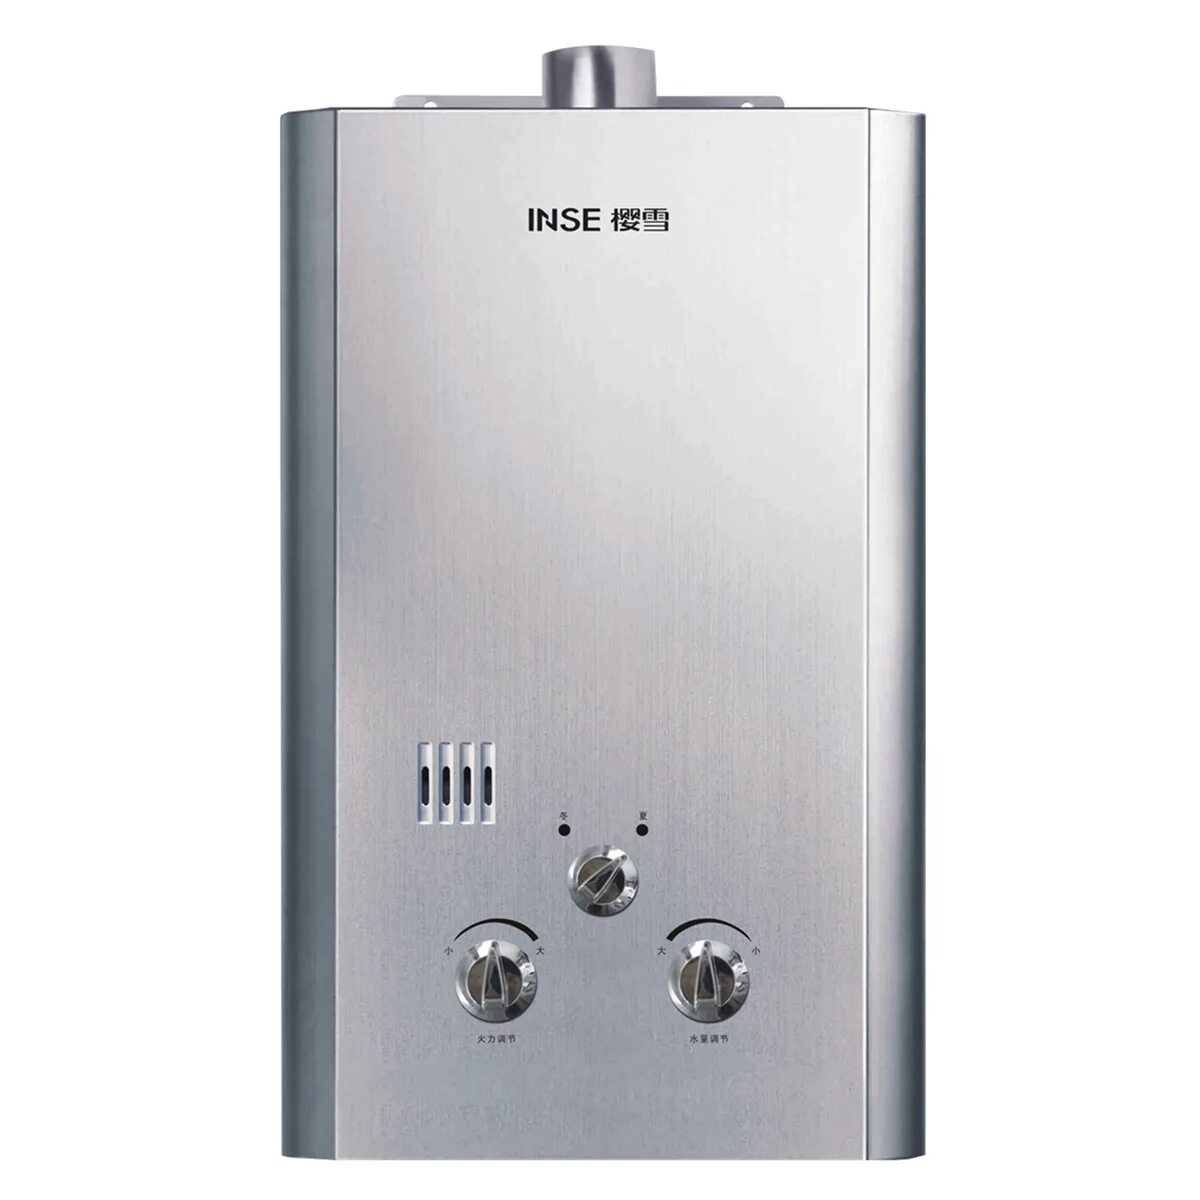 Проточный газовый водонагреватель inse Ace WR-12b White. Газовая колонка Vivat JSQ 20-10 ng природный ГАЗ. Ардо турбированная газовая колонка jsq20-10xa. Газовый водонагреватель Дон стайл 10 литров.